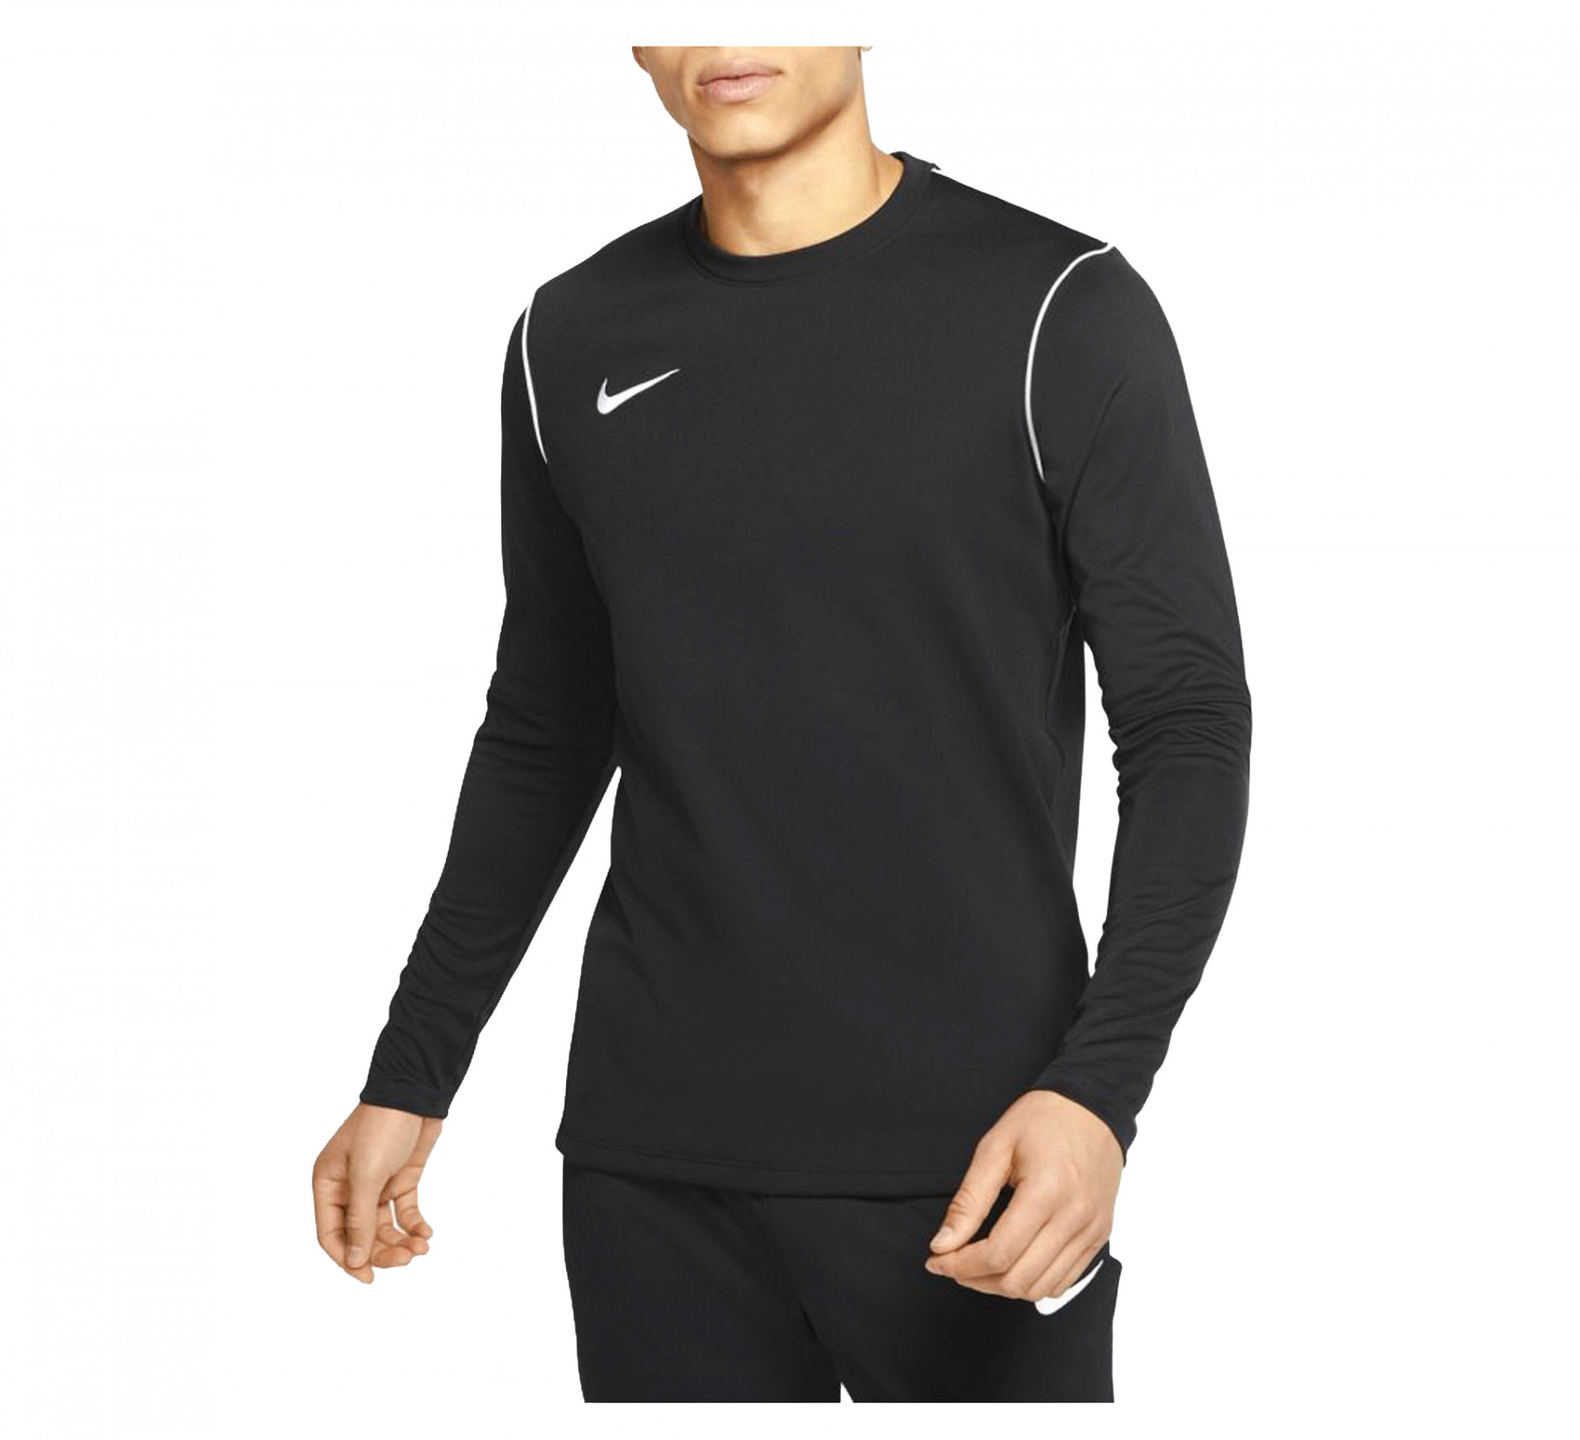 Nike sportsweater kopen